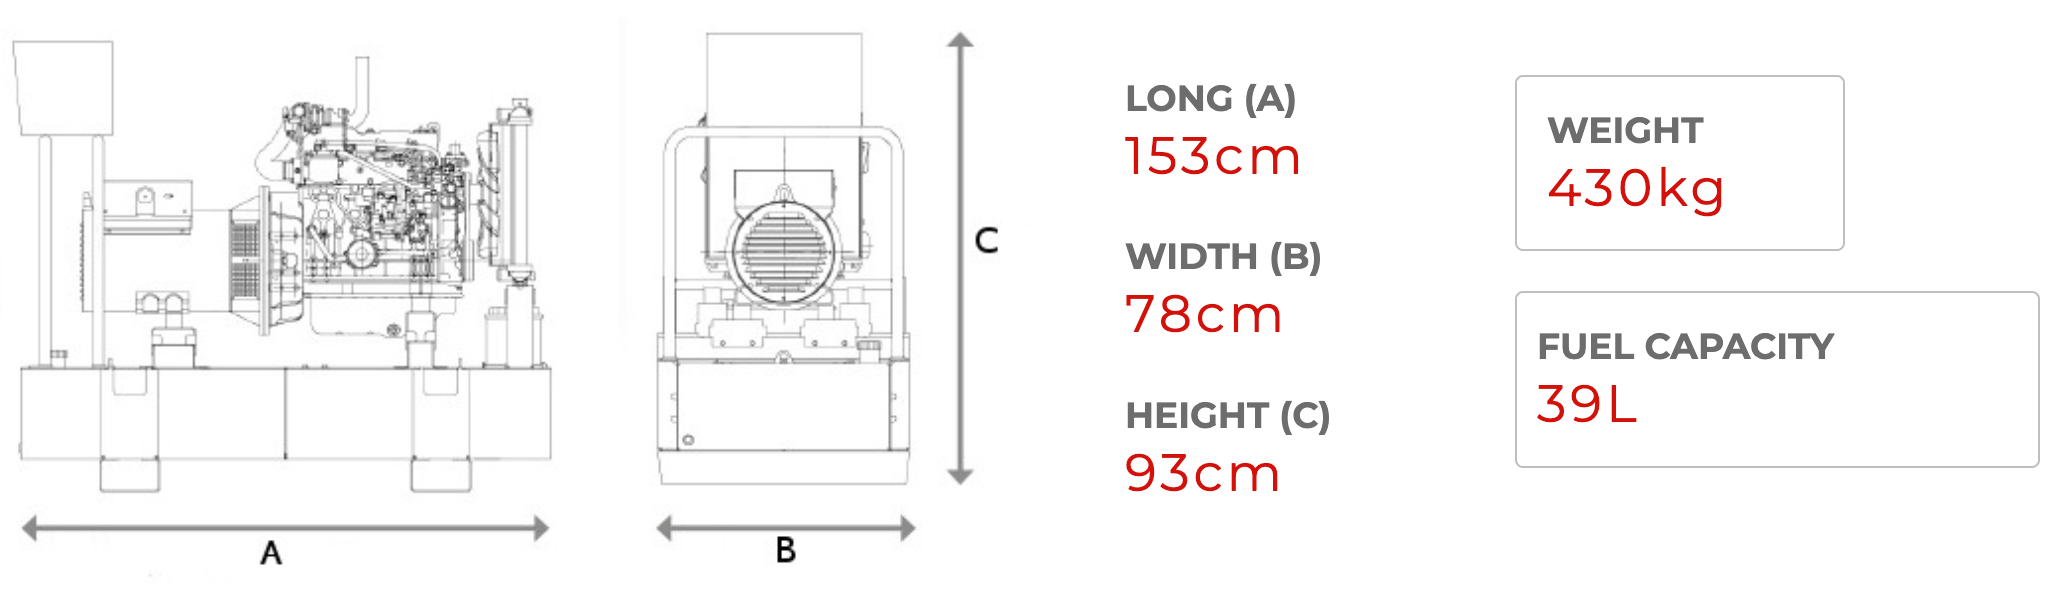 HIMOINSA HCY-9 M5 8 kVA Generator Dimensions 